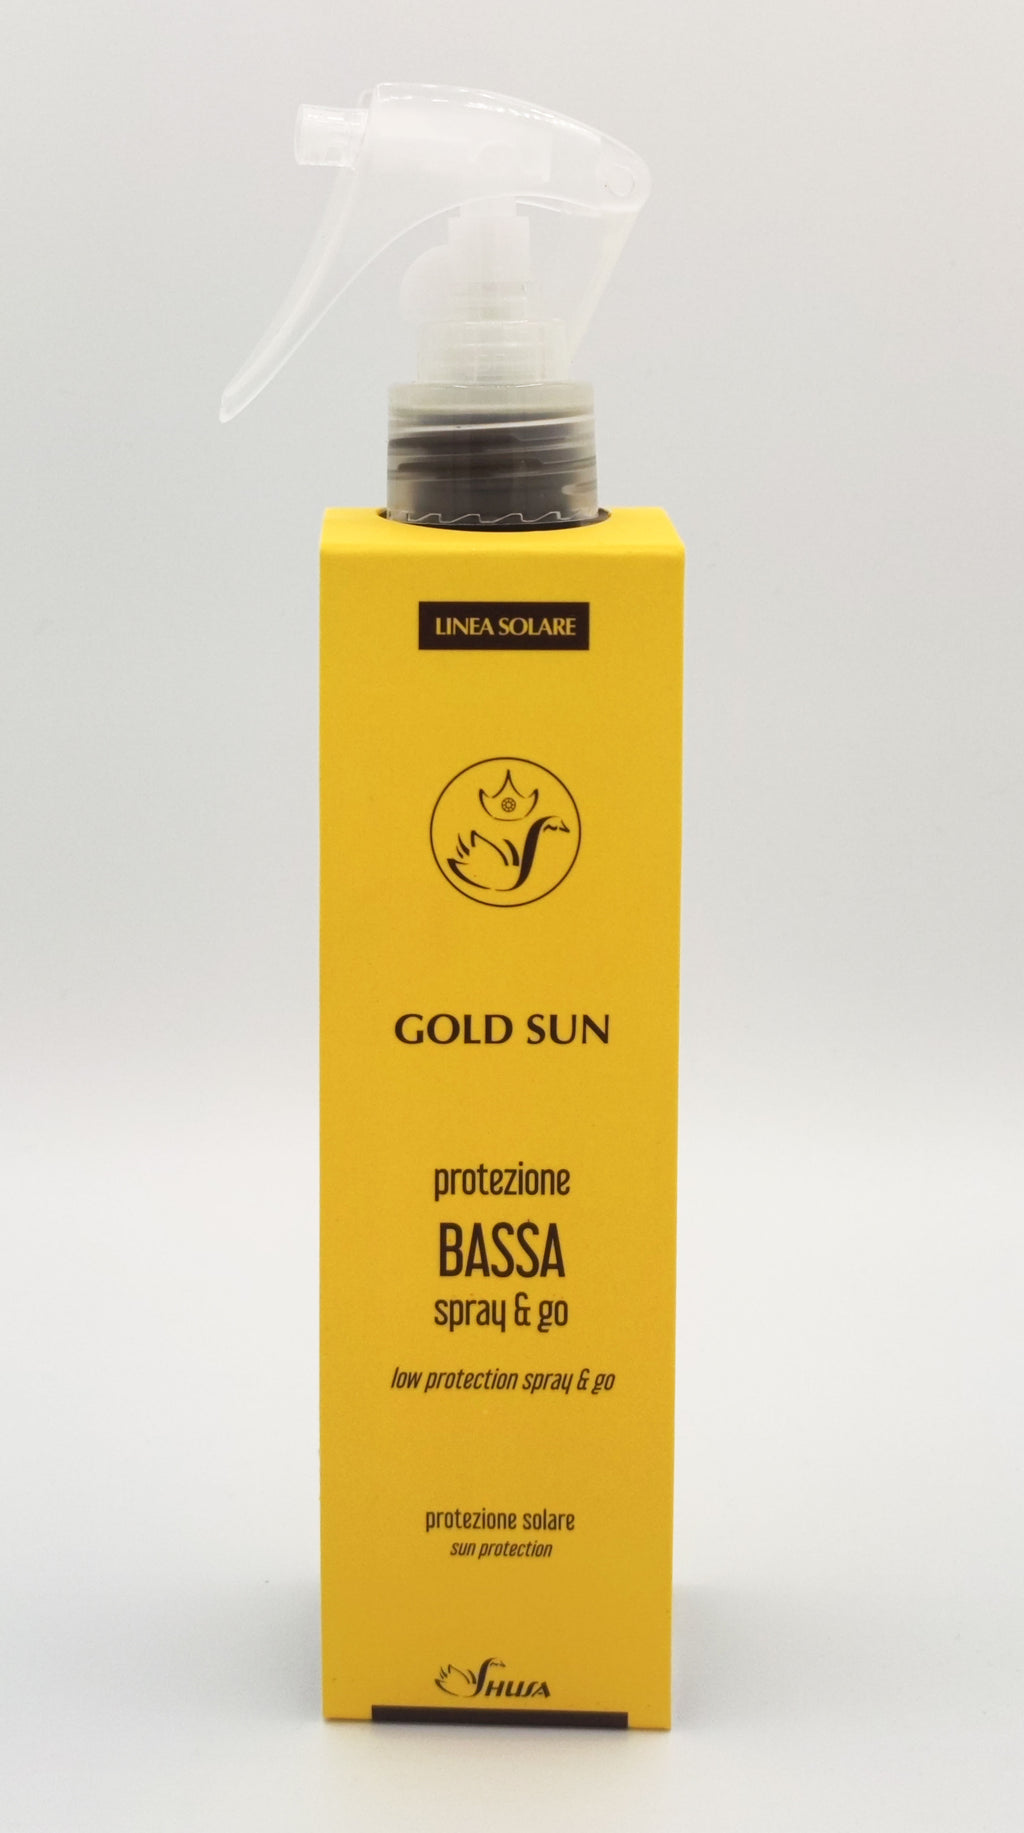 Gold sun - Protezione Bassa Spray & Go  200ml